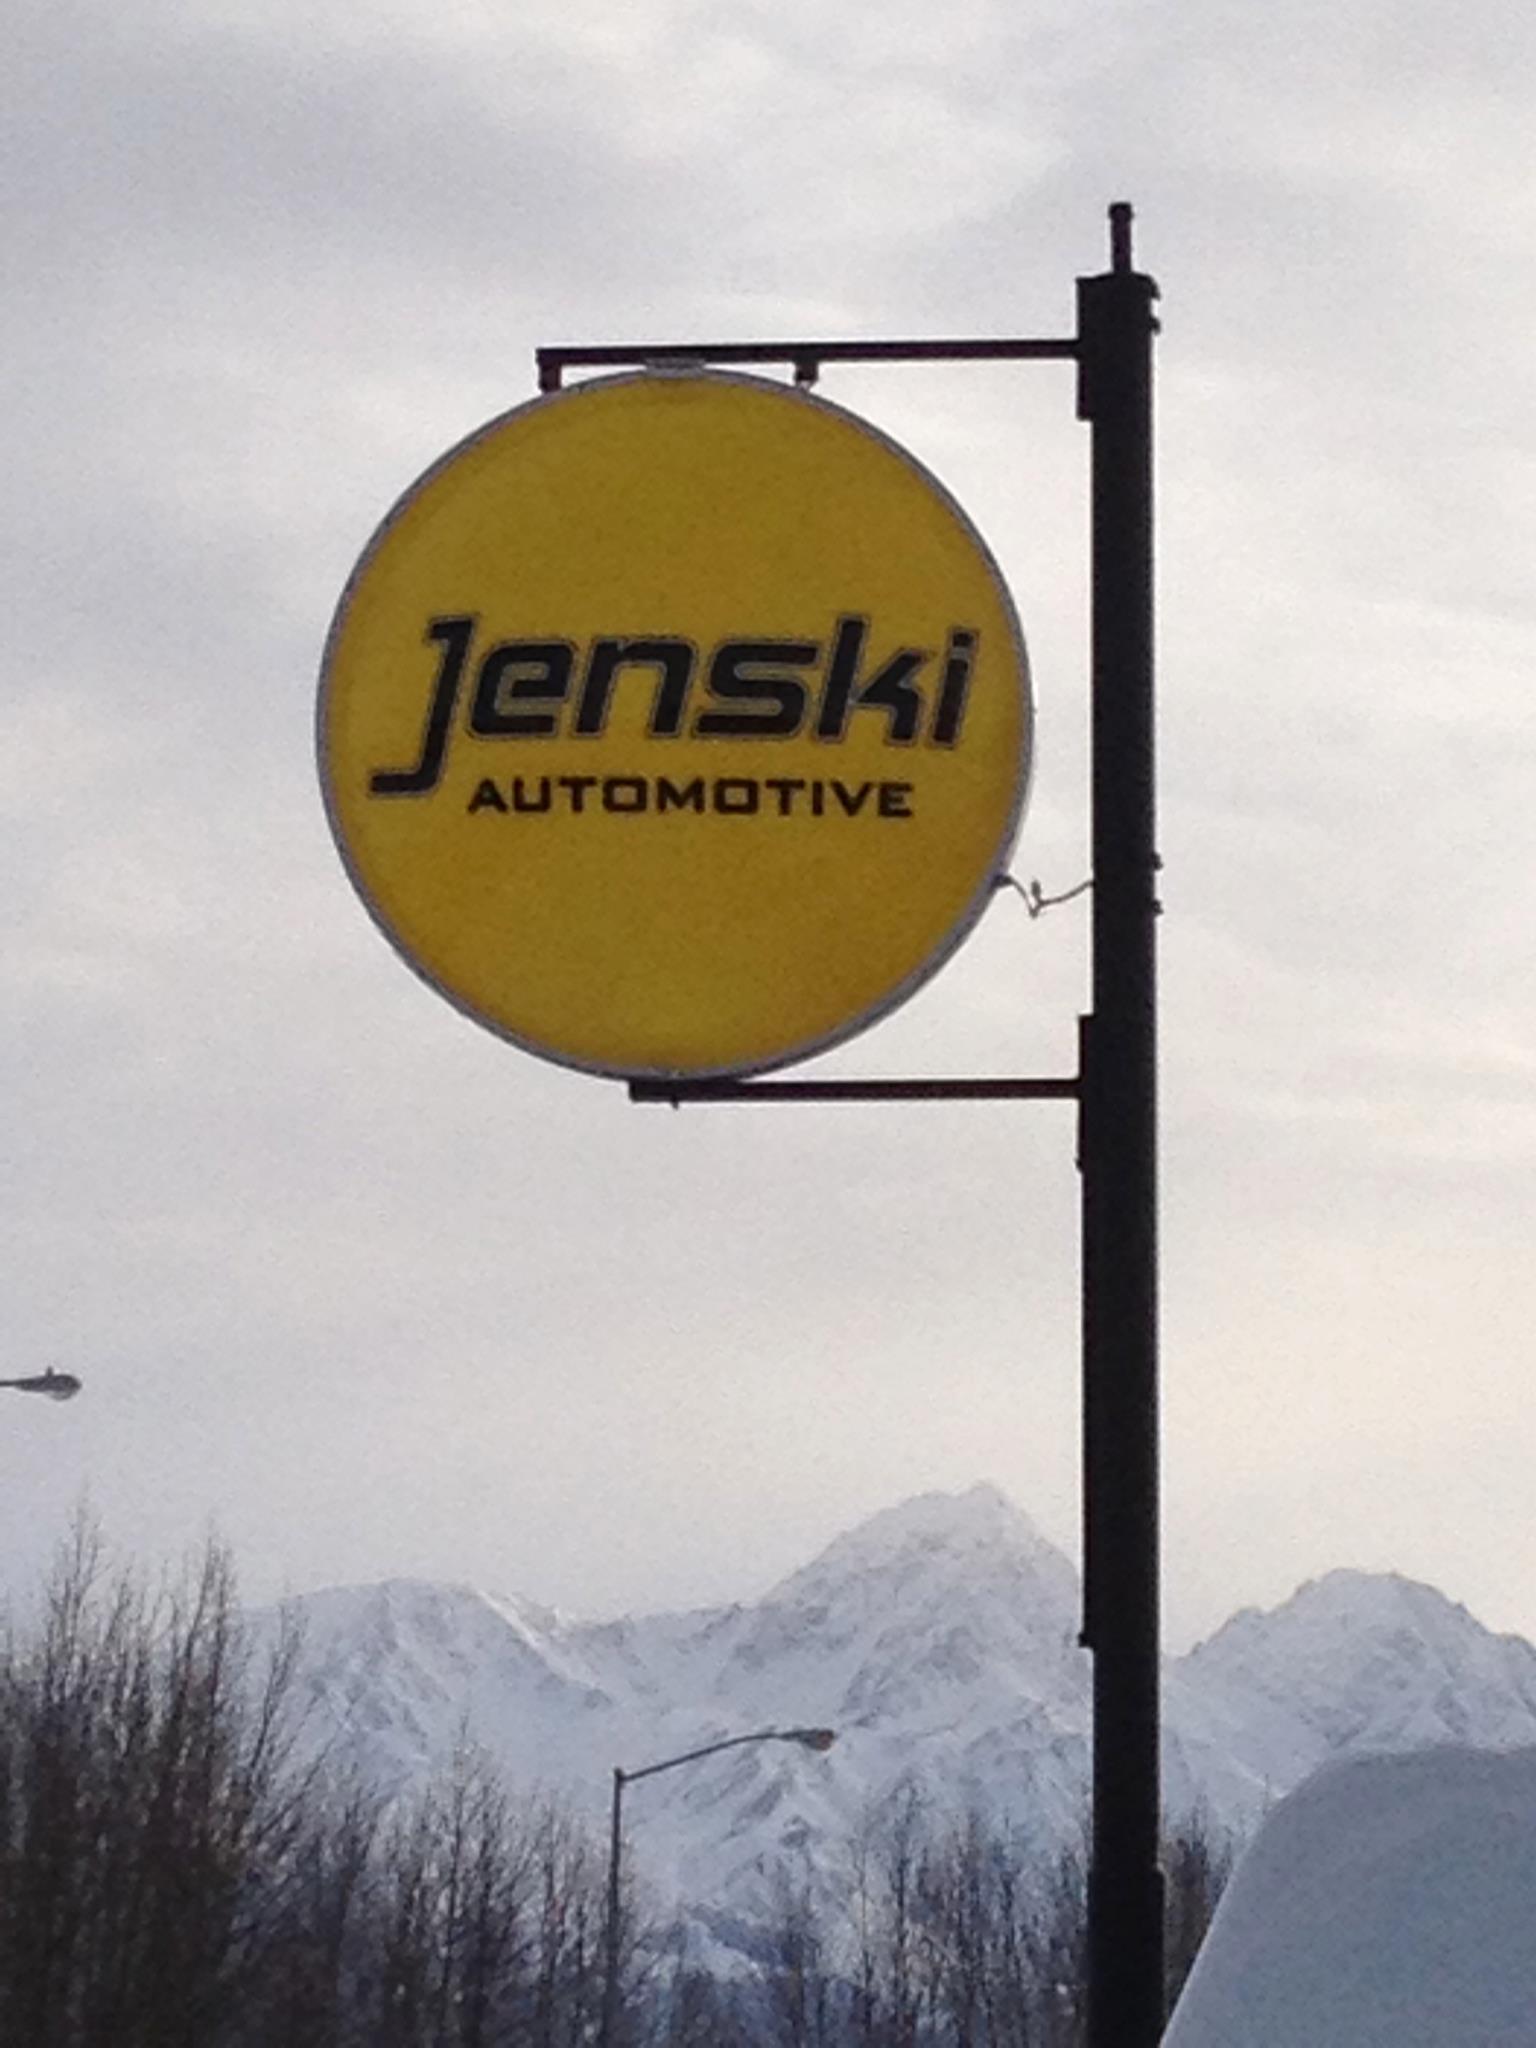 Jenski Automotive